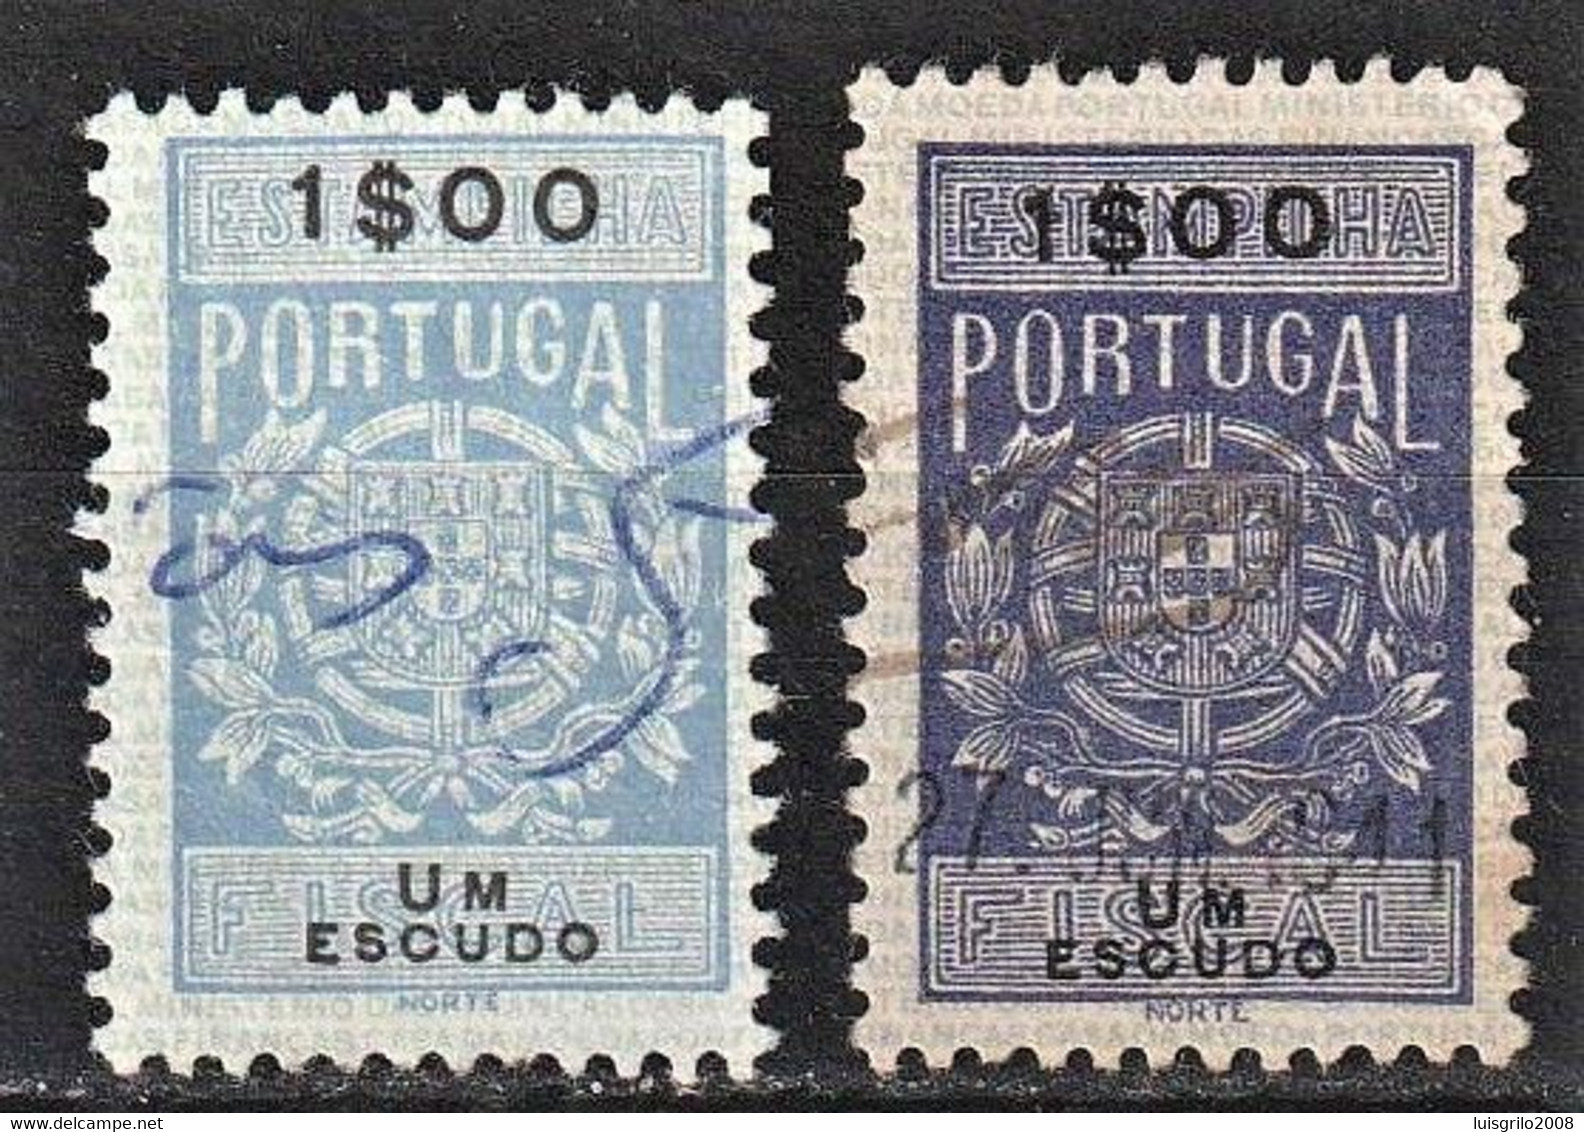 VERY RARE STAMP - Fiscal/ Revenue, Portugal 1940 - Estampilha Fiscal -|- 1$00 - DIFFERENT COLOR - Oblitérés